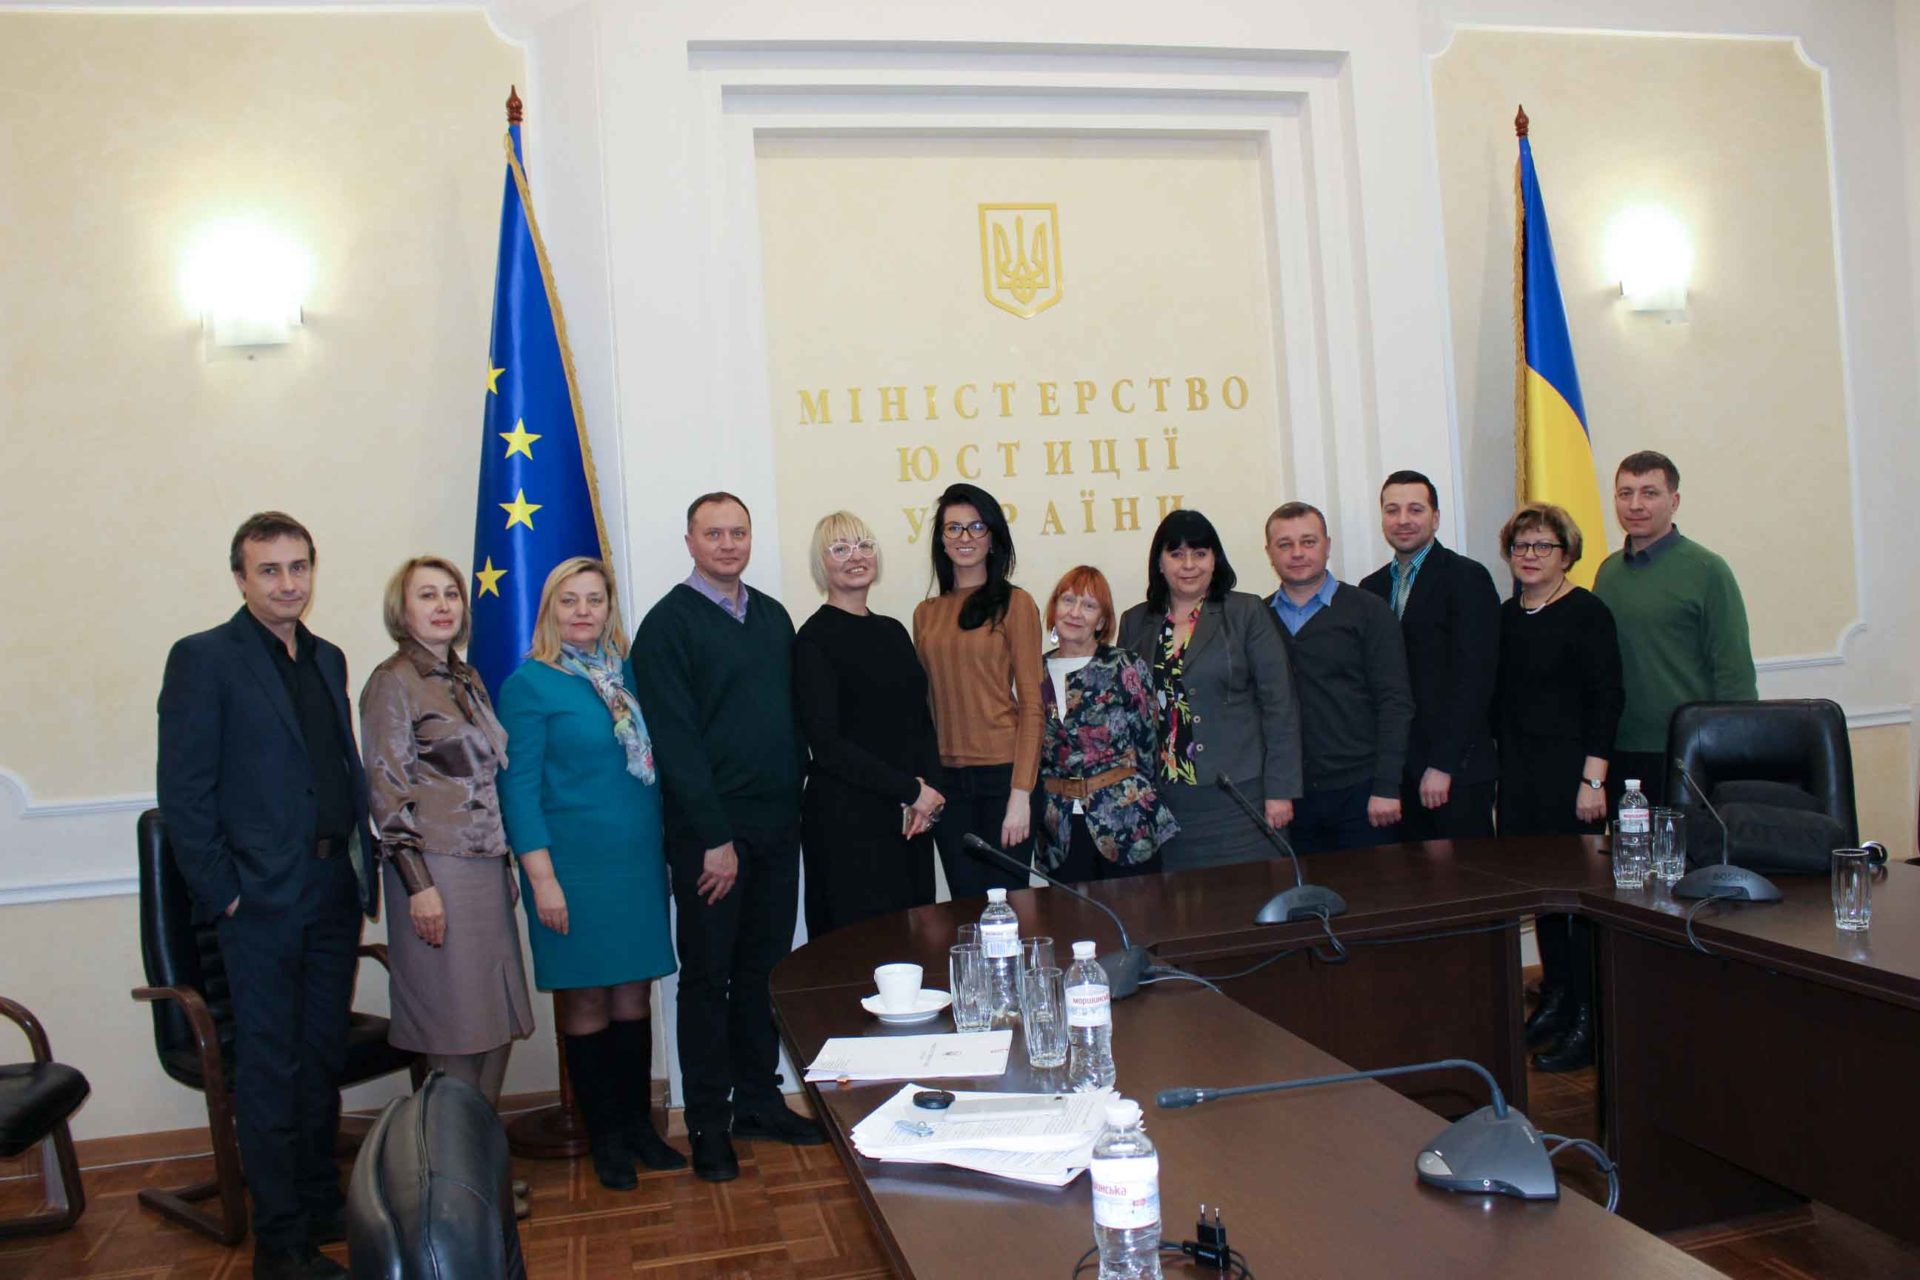 Juvenile justice reforms based on international standards in Ukraine